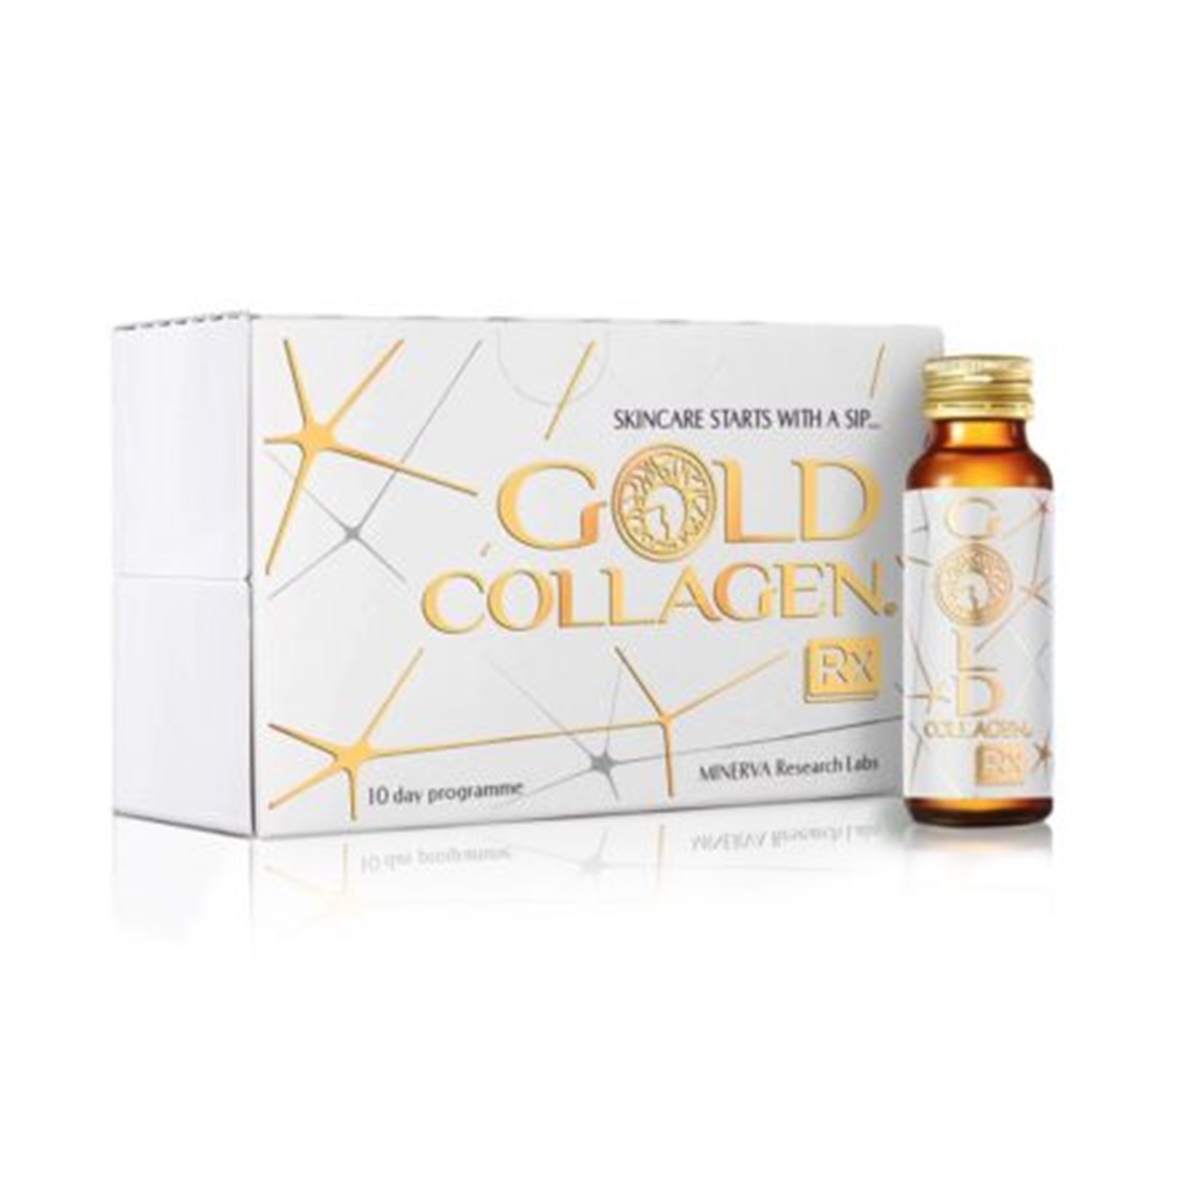 gold collagenx